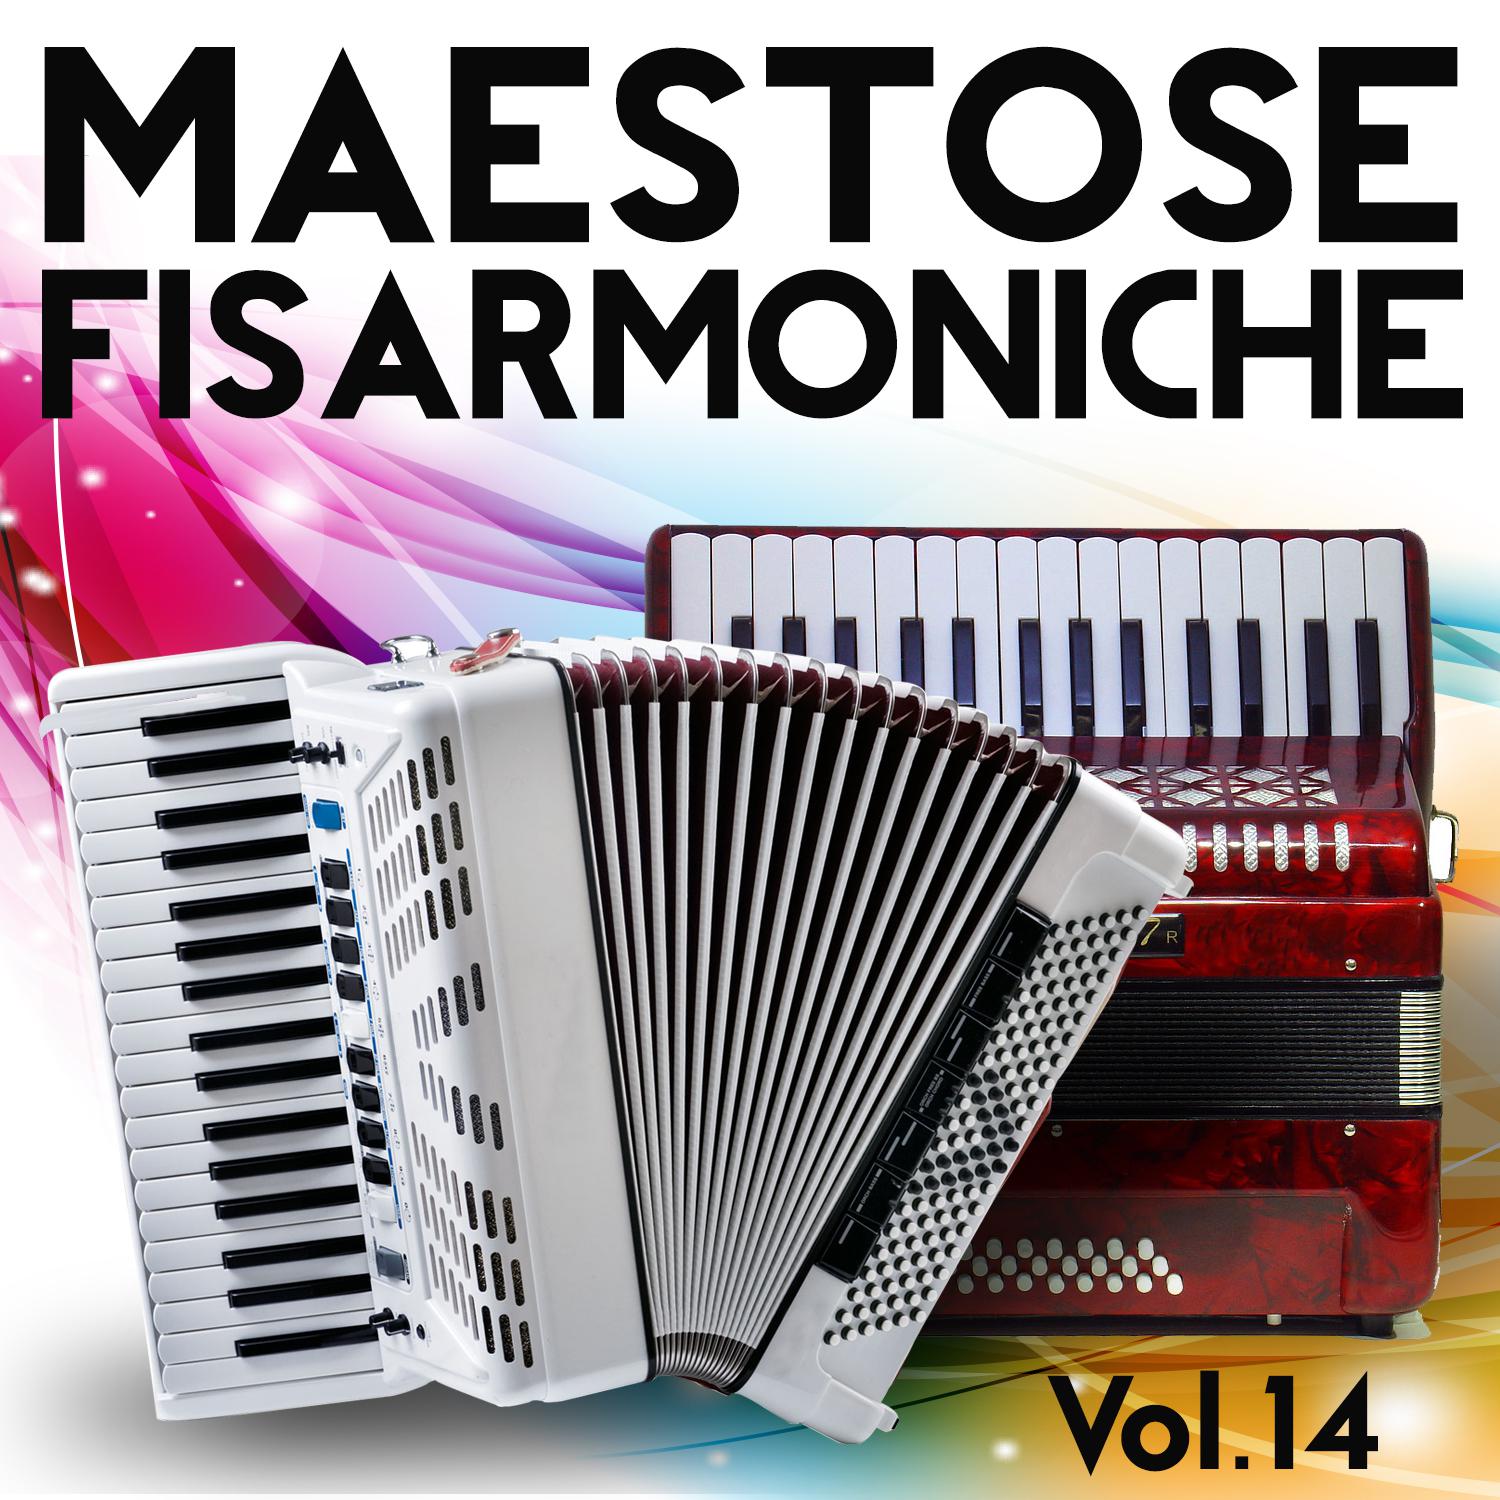 Maestose Fisarmoniche Vol. 14